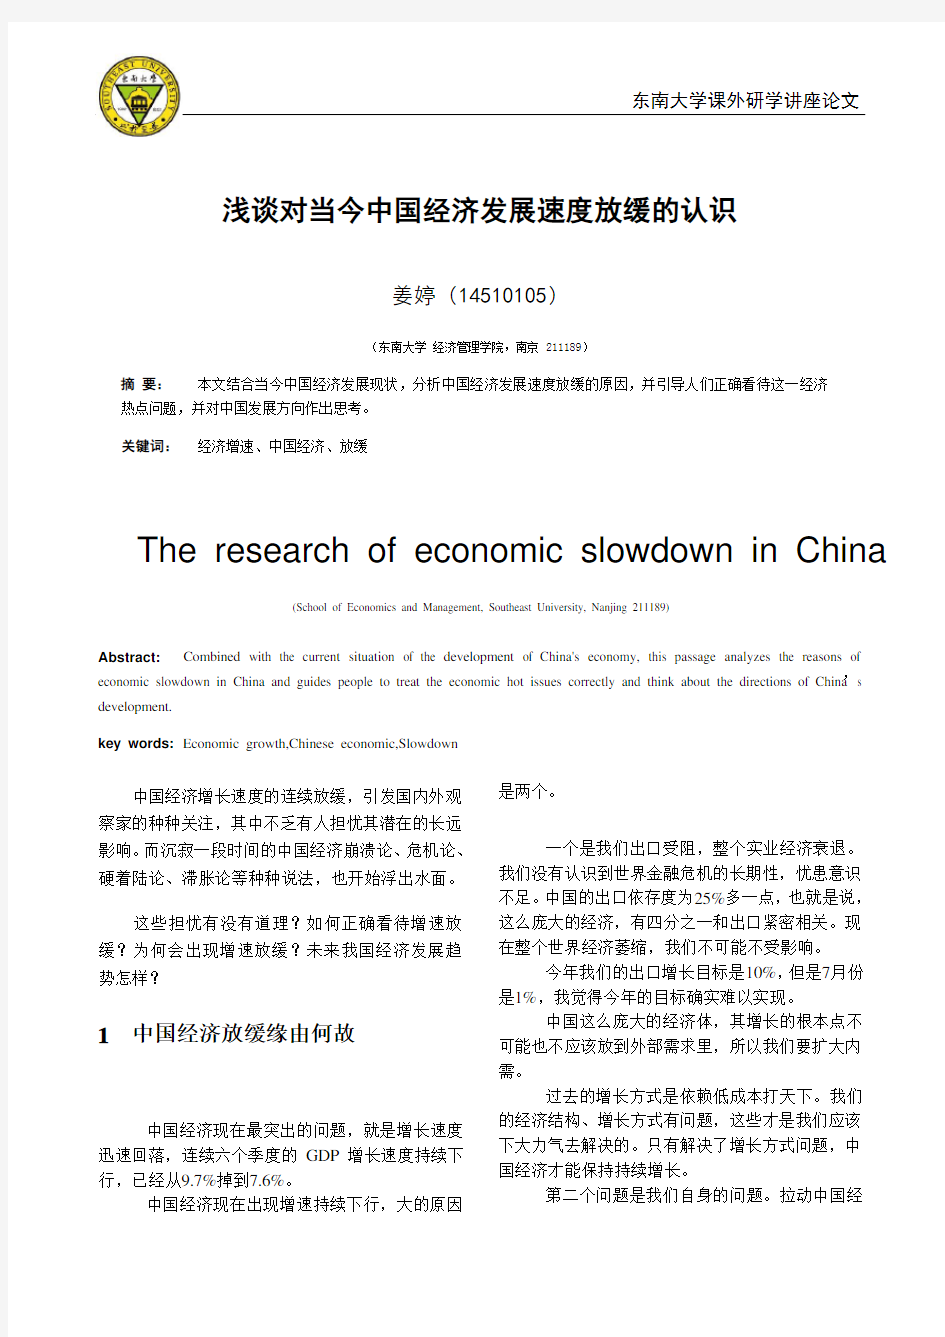 浅谈对当今中国经济发展速度放缓的认识